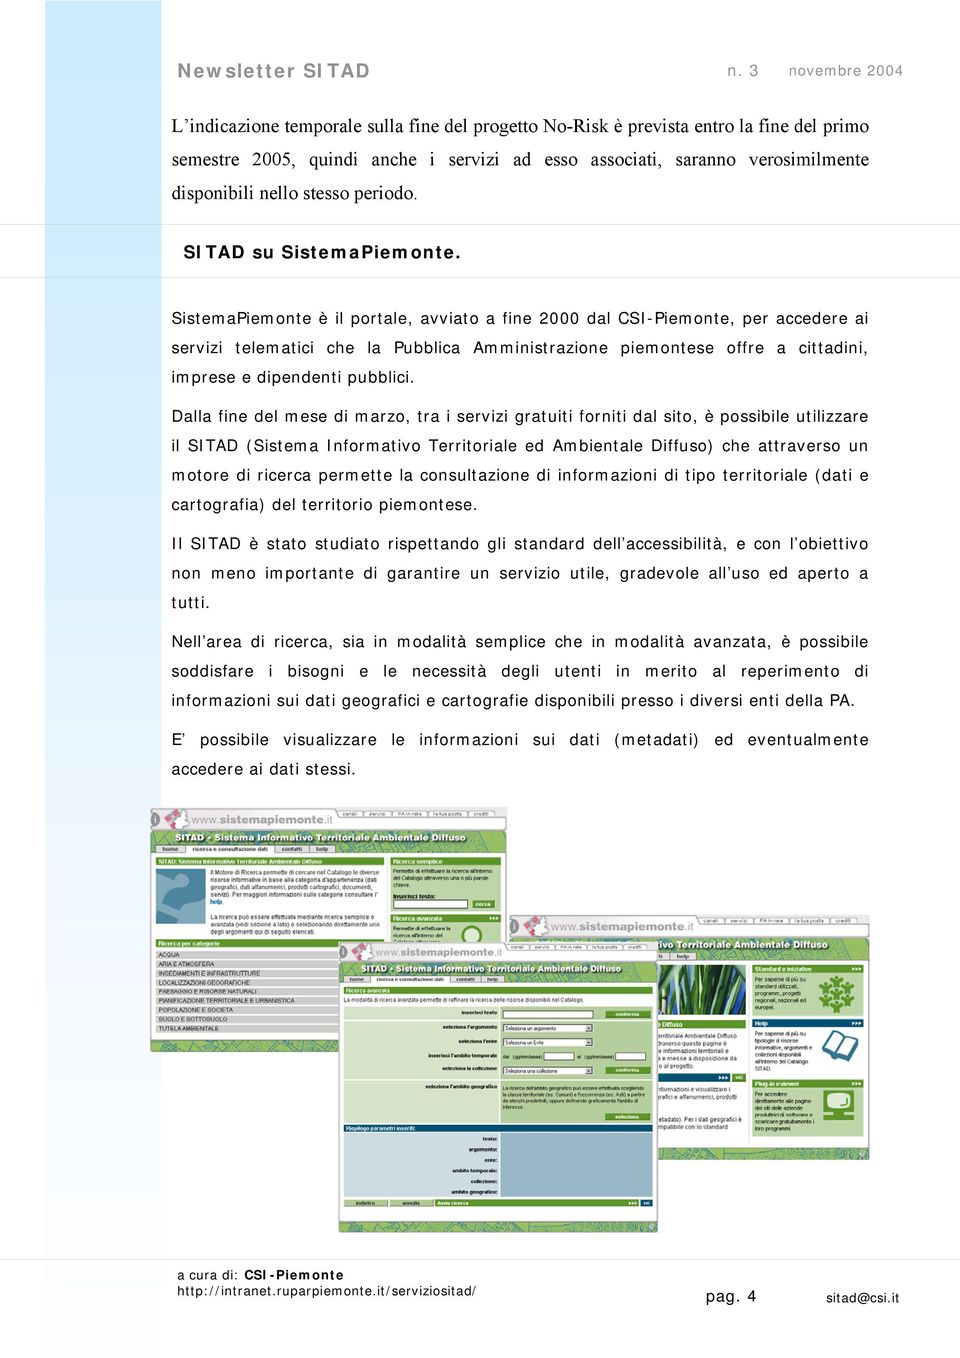 SistemaPiemonte è il portale, avviato a fine 2000 dal CSI-Piemonte, per accedere ai servizi telematici che la Pubblica Amministrazione piemontese offre a cittadini, imprese e dipendenti pubblici.